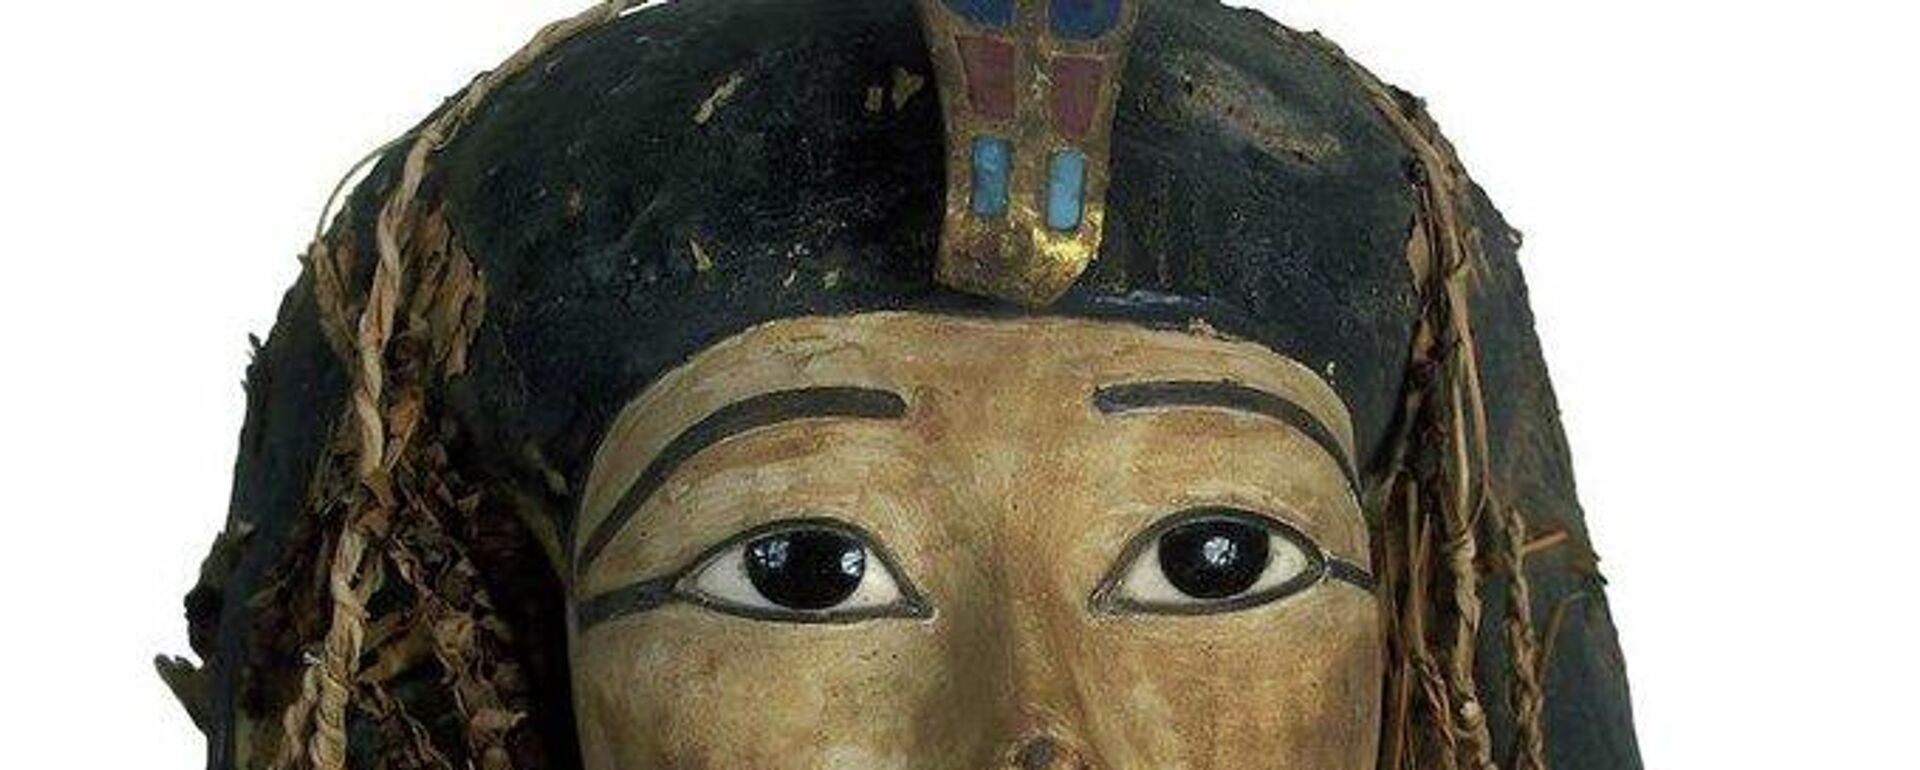 Mısır firavunu Amenhotep I'in daha önce hiç açılmamış mumyasının yüz maskesi - Sputnik Türkiye, 1920, 28.12.2021